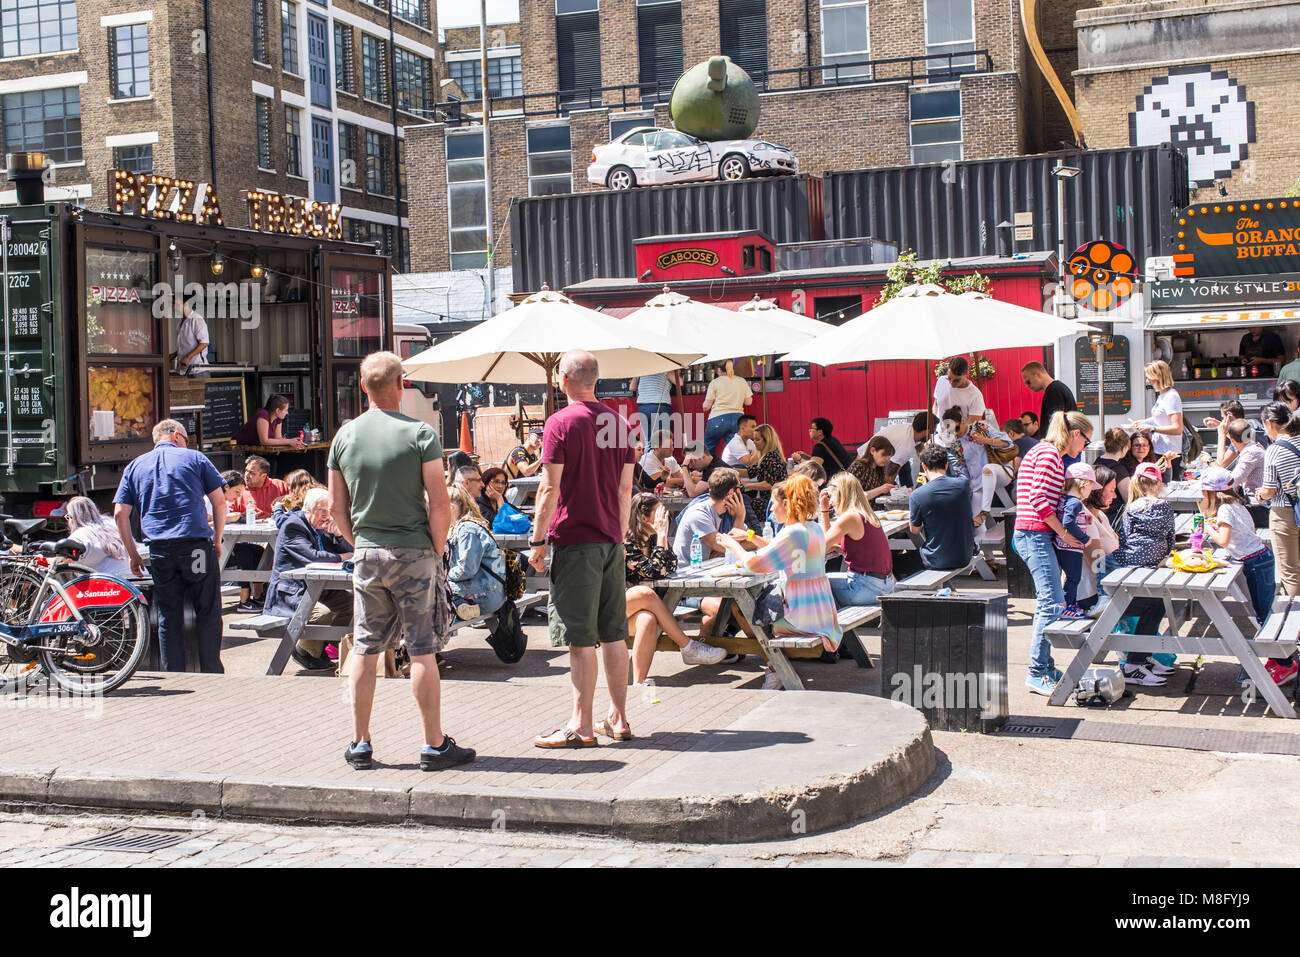 Pop up stands restaurants en plein air avec des gens de manger sur des tables outiside à l'Old Truman Brewery, Ely's Yard, Shoreditch, London, UK Banque D'Images